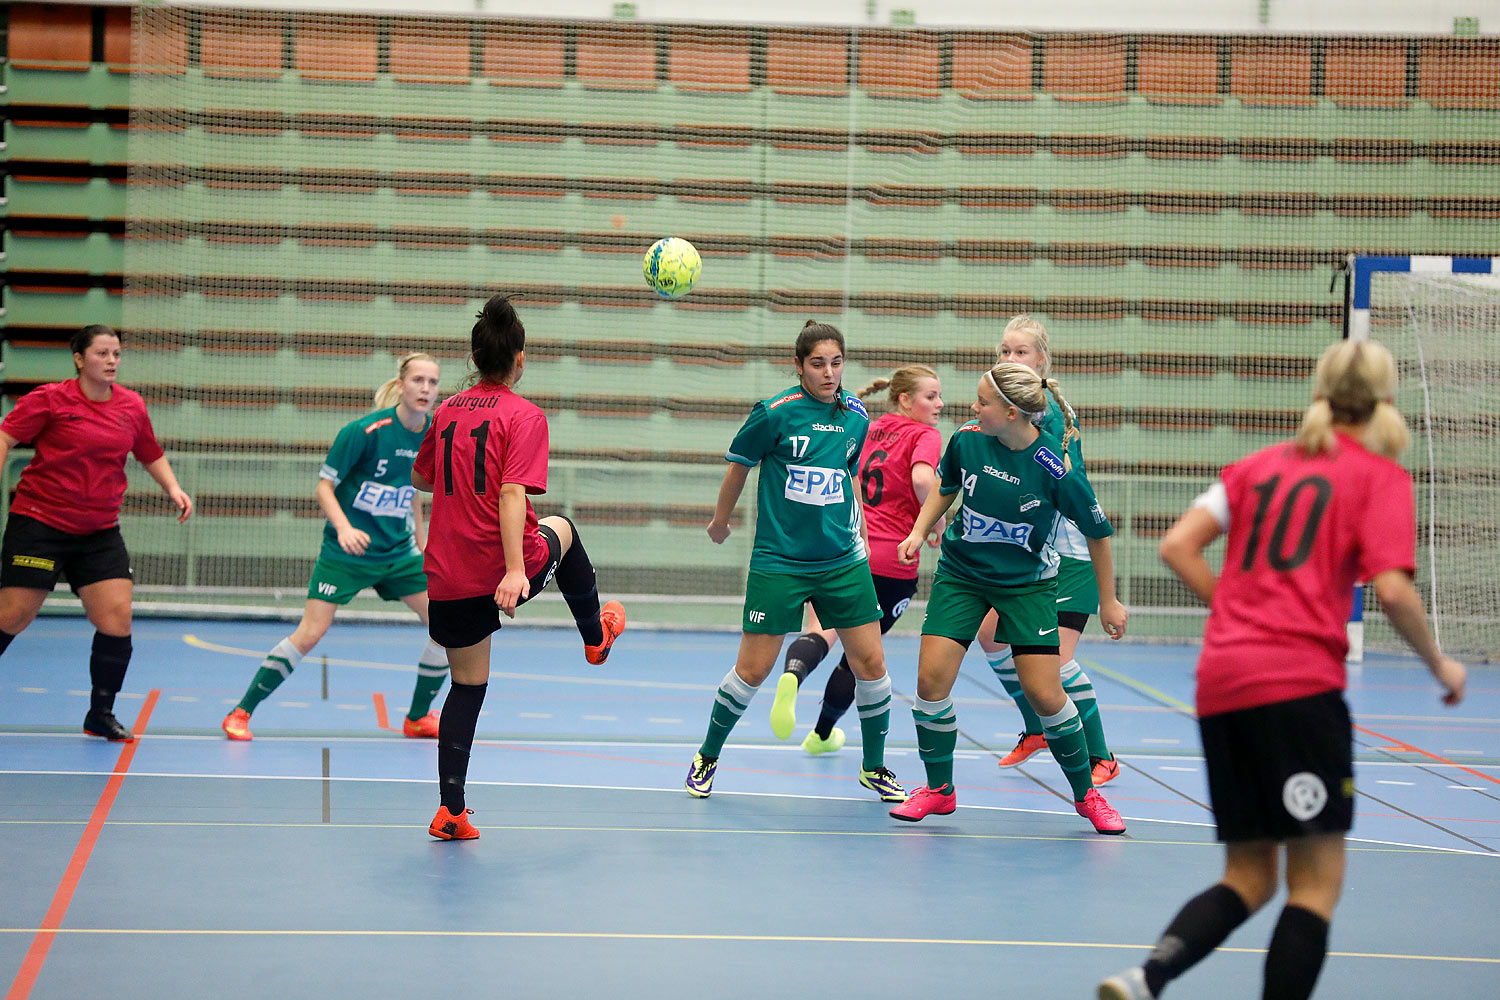 Skövde Futsalcup Damer Falköping Futsal Club-Våmbs IF,dam,Arena Skövde,Skövde,Sverige,Skövde Futsalcup 2016,Futsal,2016,141854